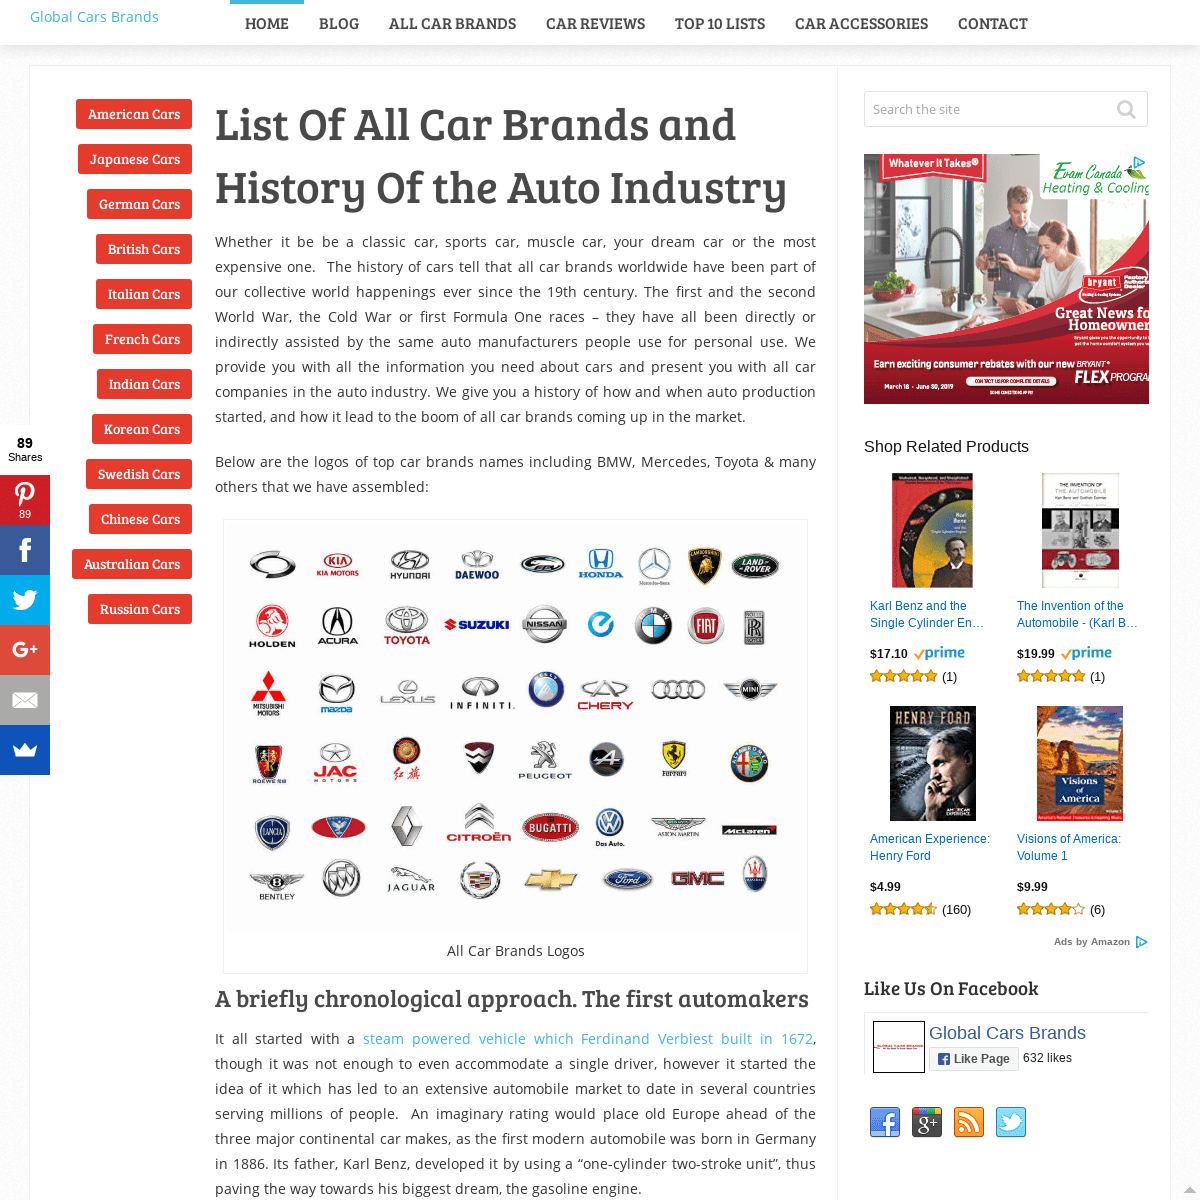 A complete backup of globalcarsbrands.com